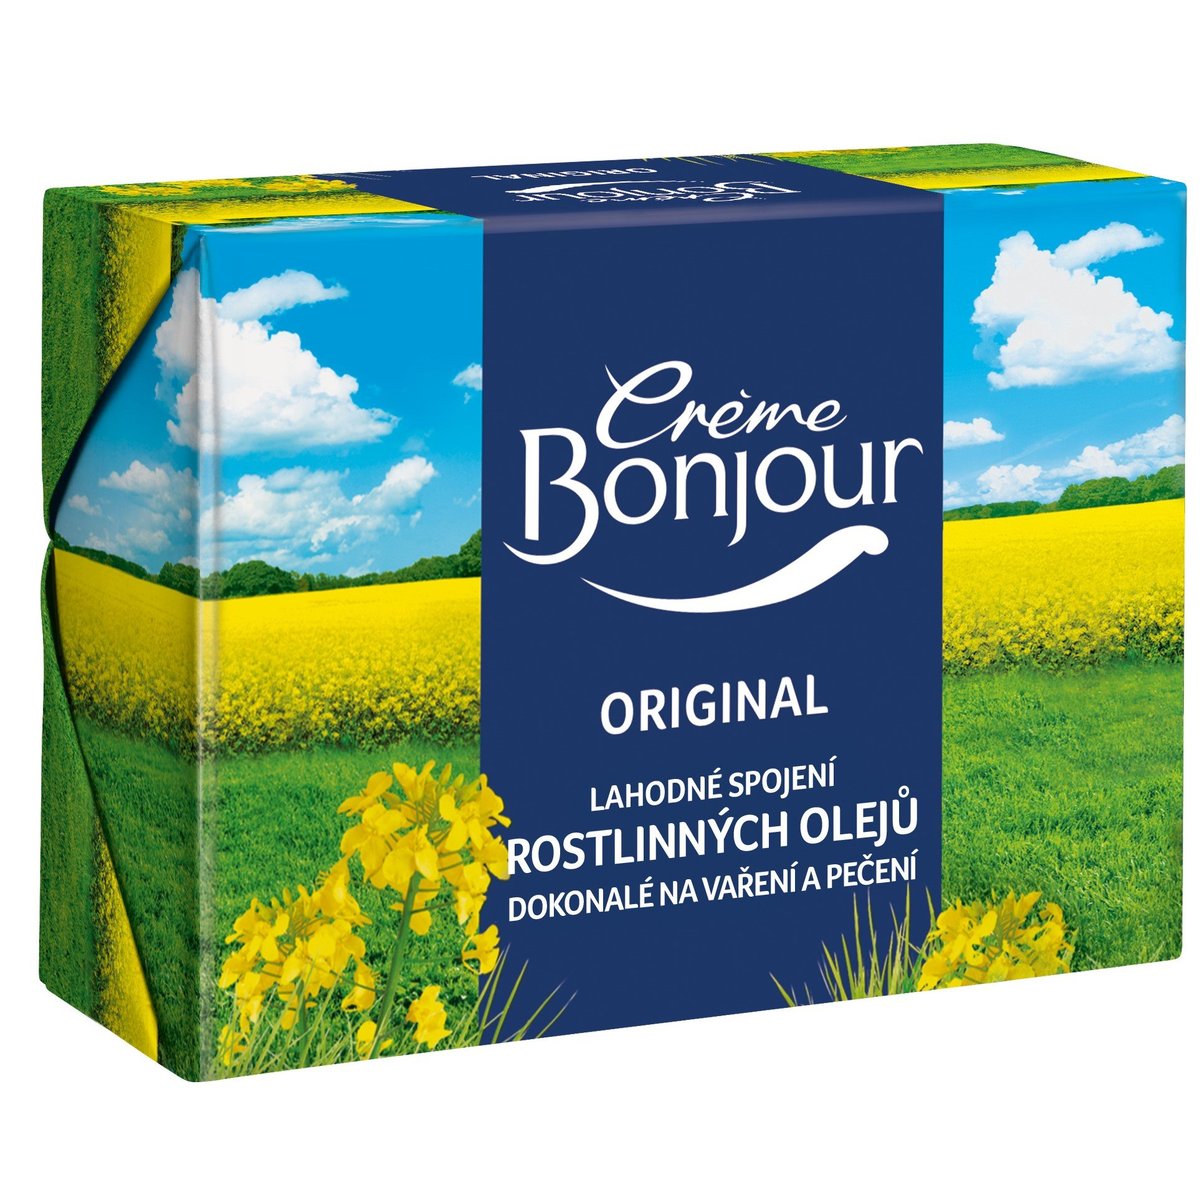 Crème Bonjour Original v akci